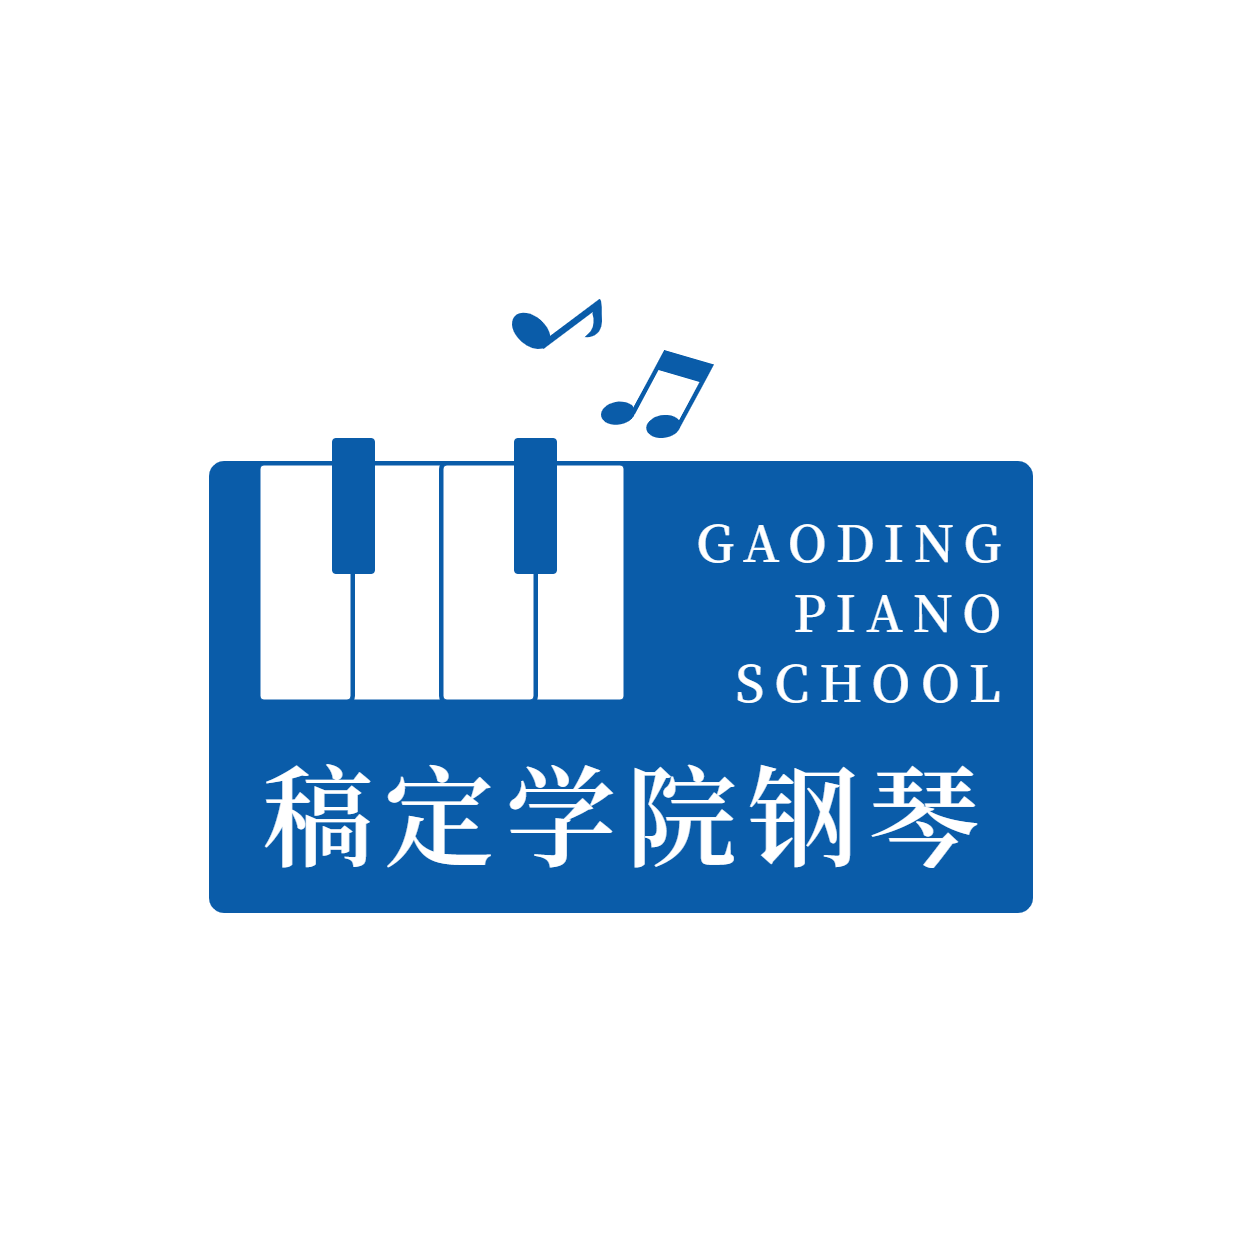 教育培训机构钢琴班logo预览效果